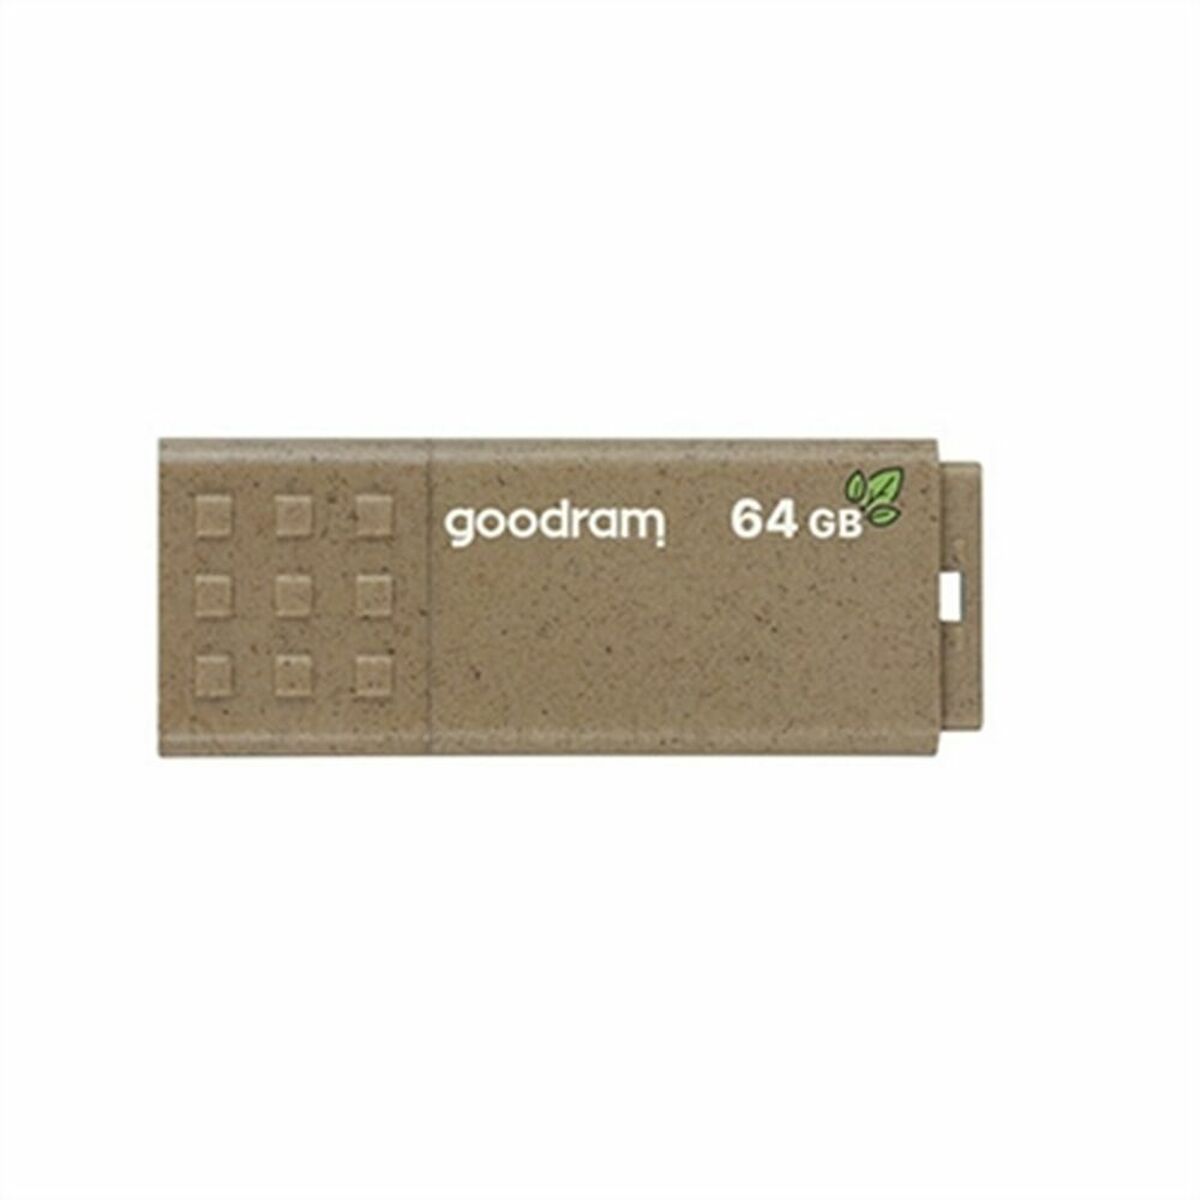 GoodRam UME3 Umweltfreundlicher USB-Stick 64 GB